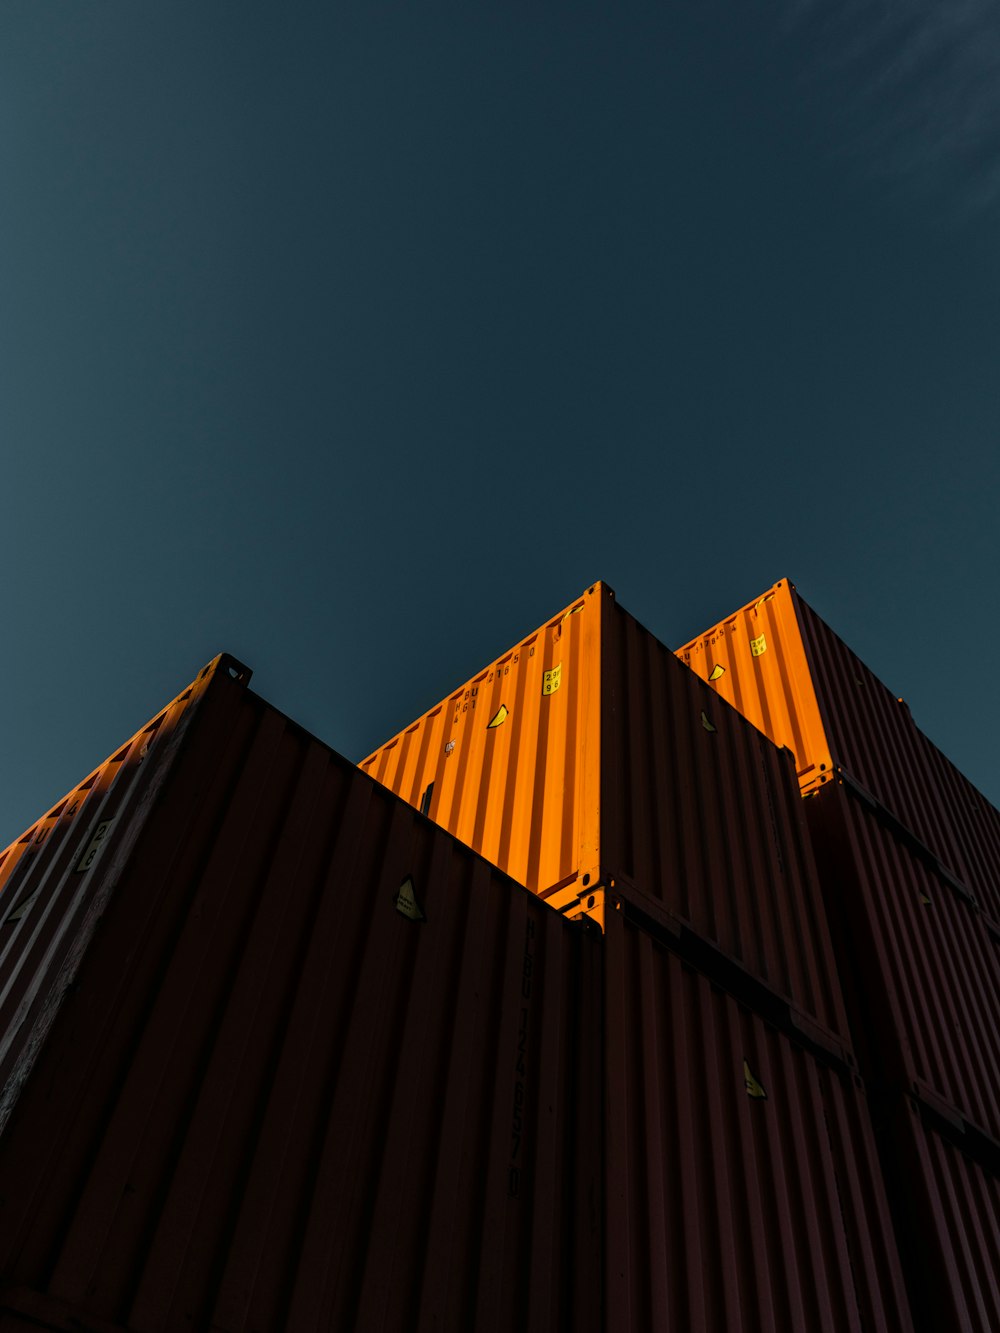 Bâtiment orange et noir sous ciel bleu